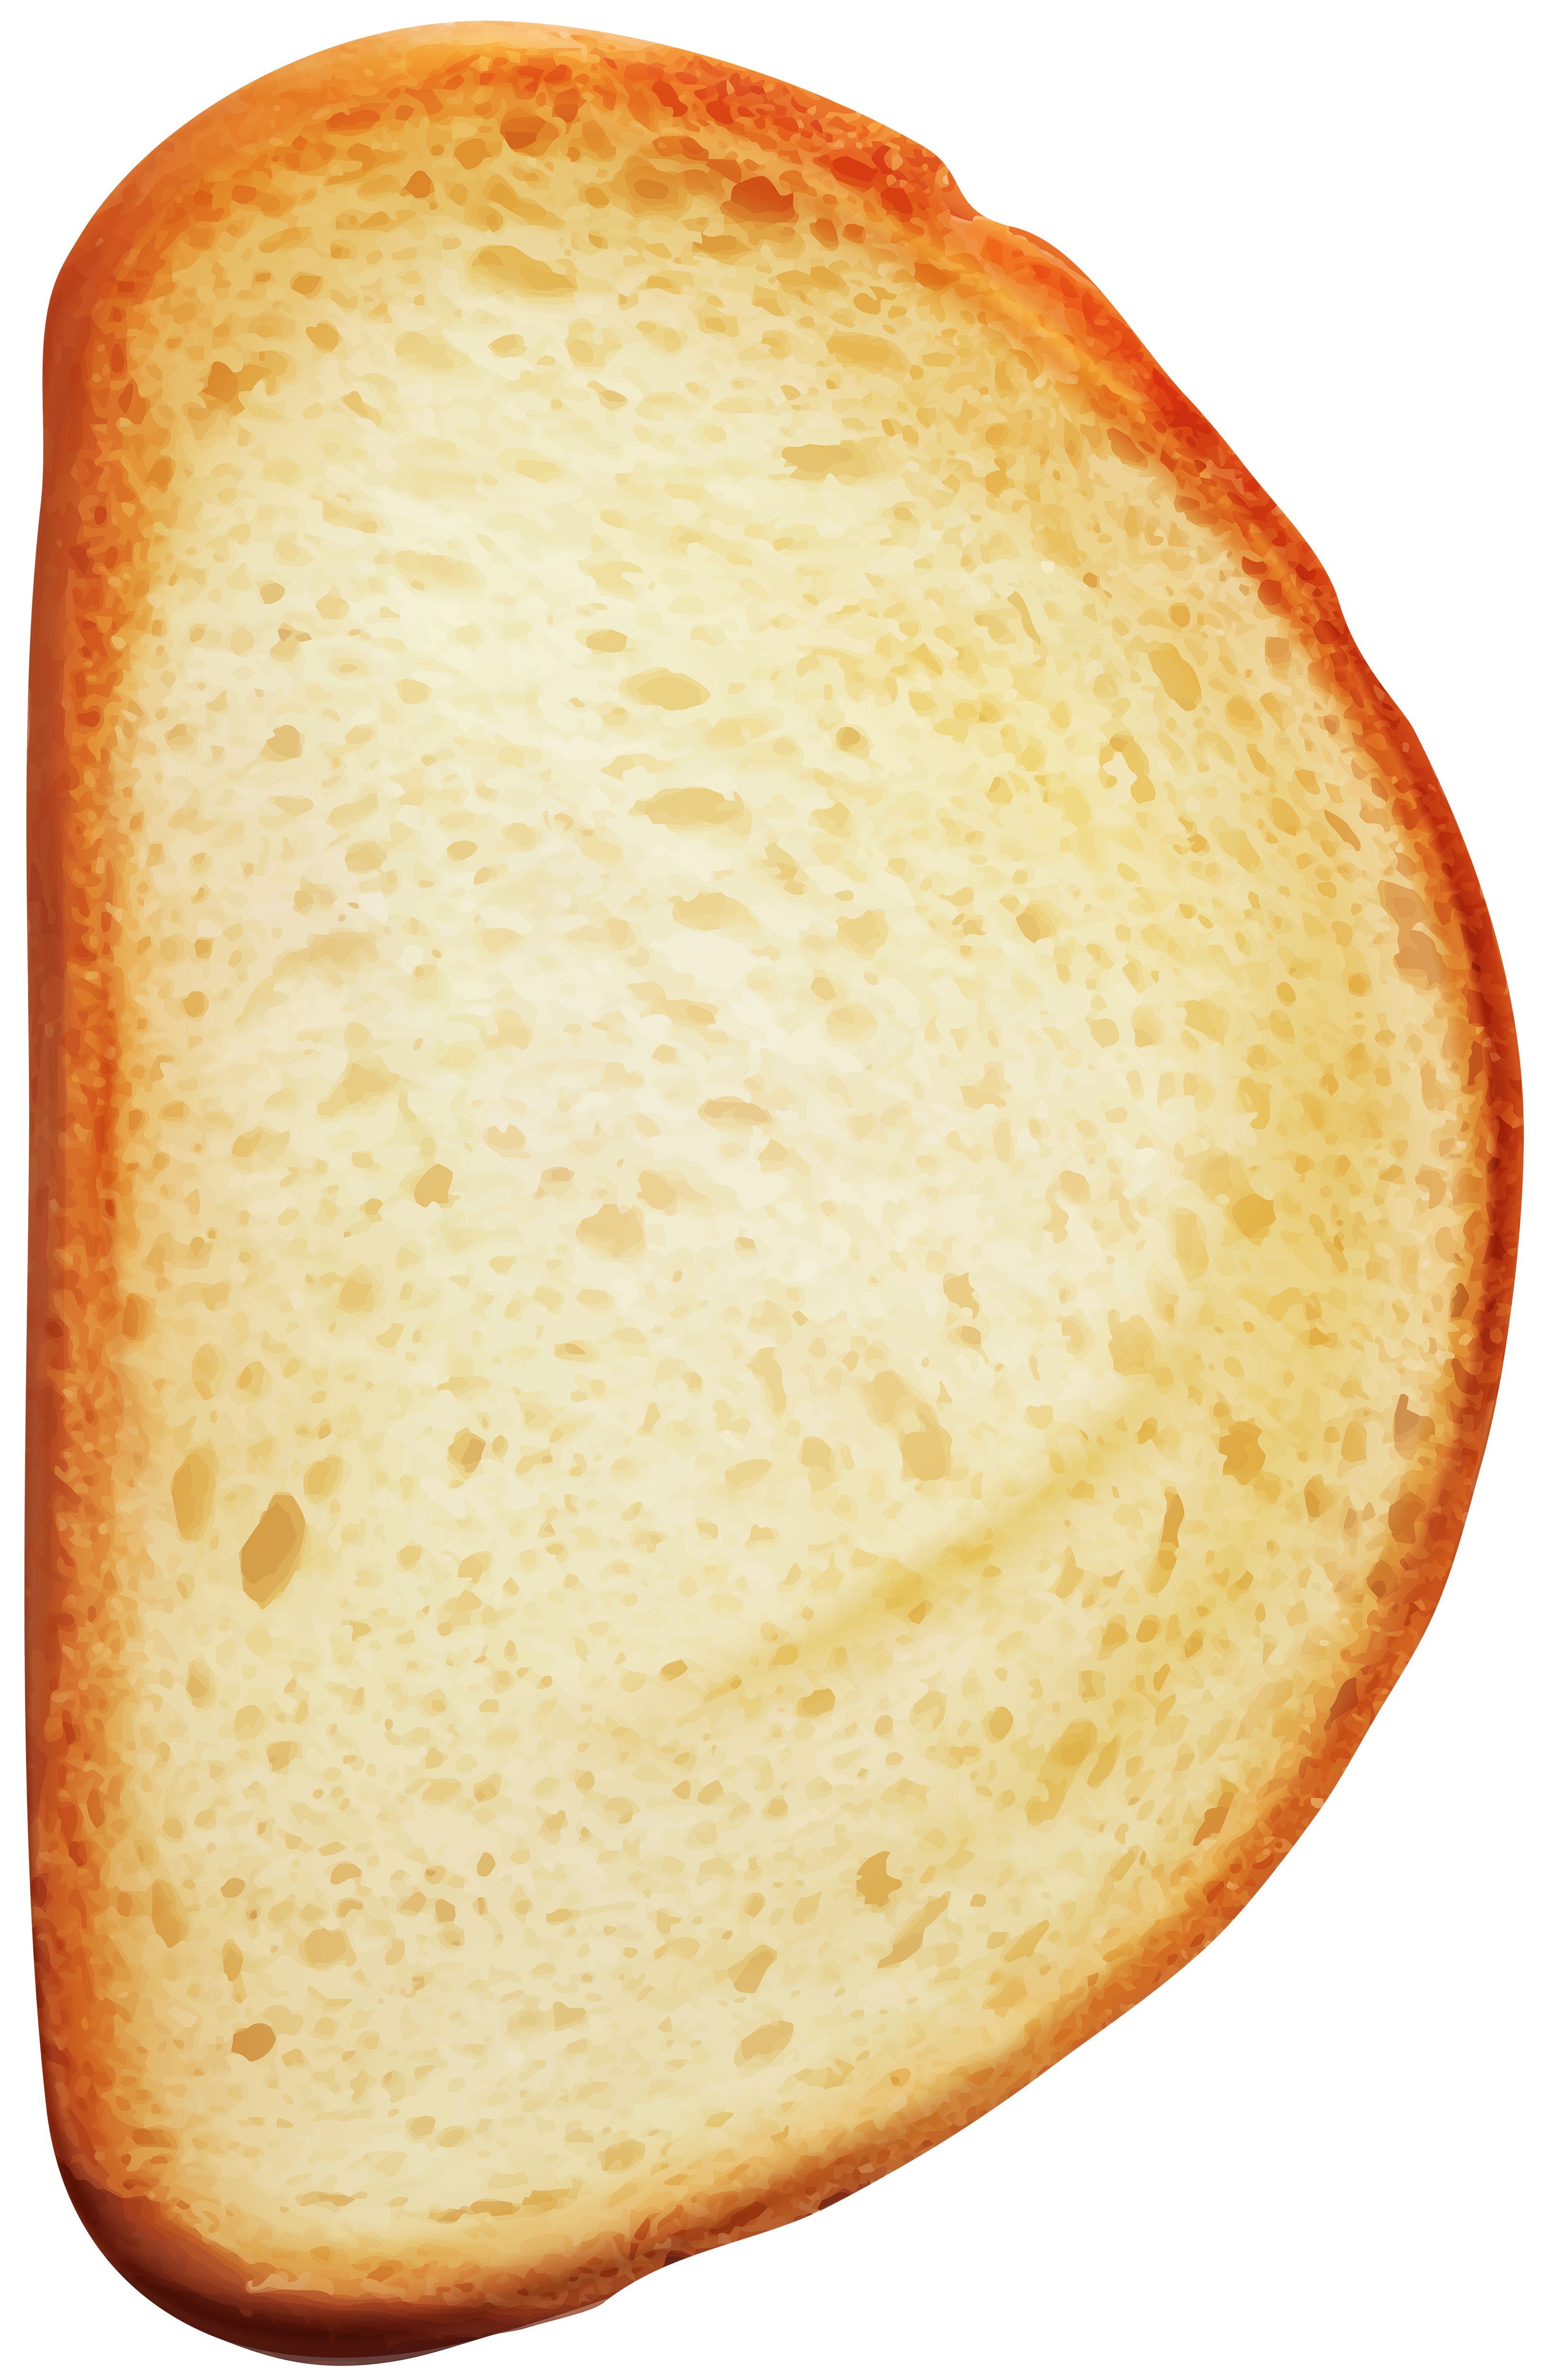 slice of bread clipart